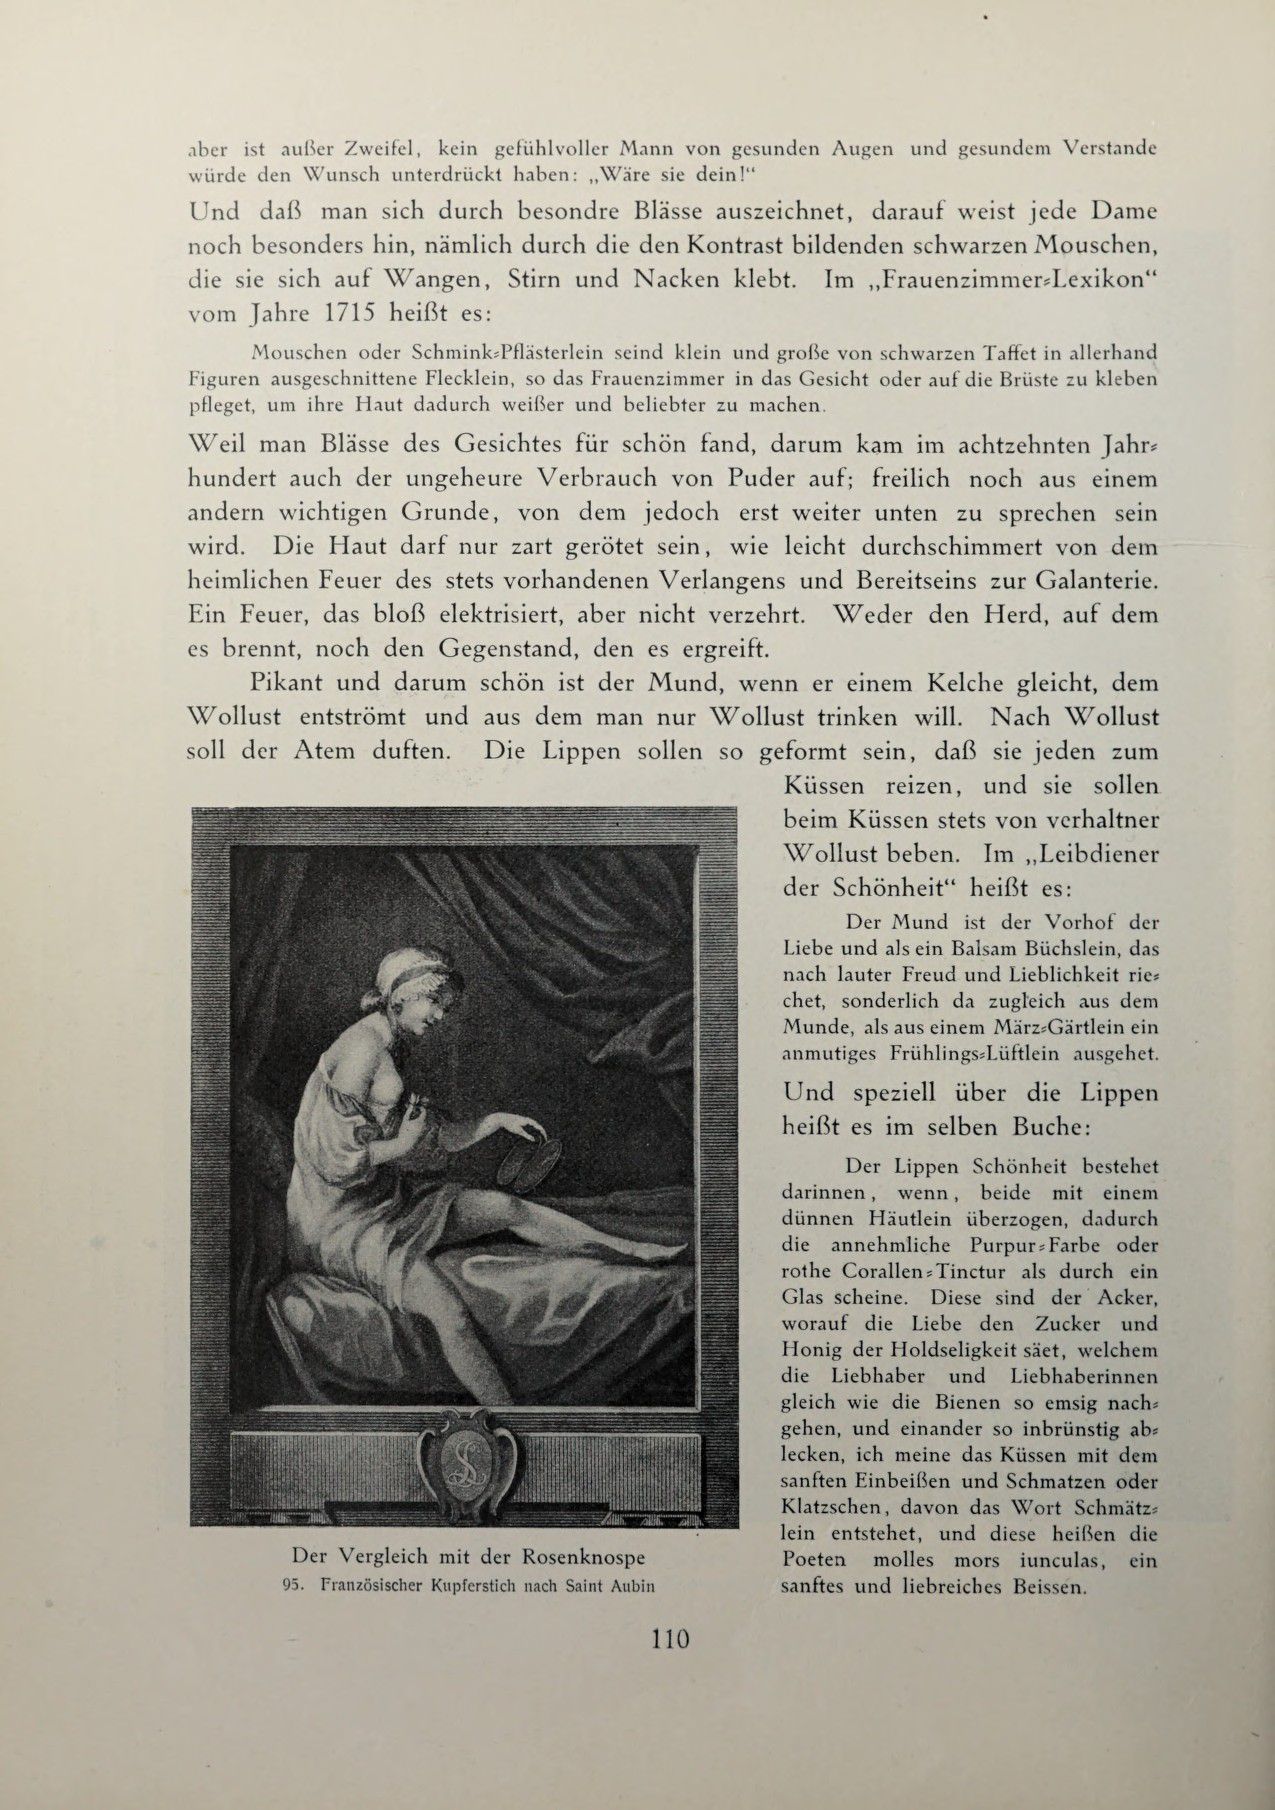 [Eduard Fuchs] Illustrierte Sittengeschichte vom Mittelalter bis zur Gegenwart: Bd. 2. and Ergänzungsband. Die galante Zeit [German] 169